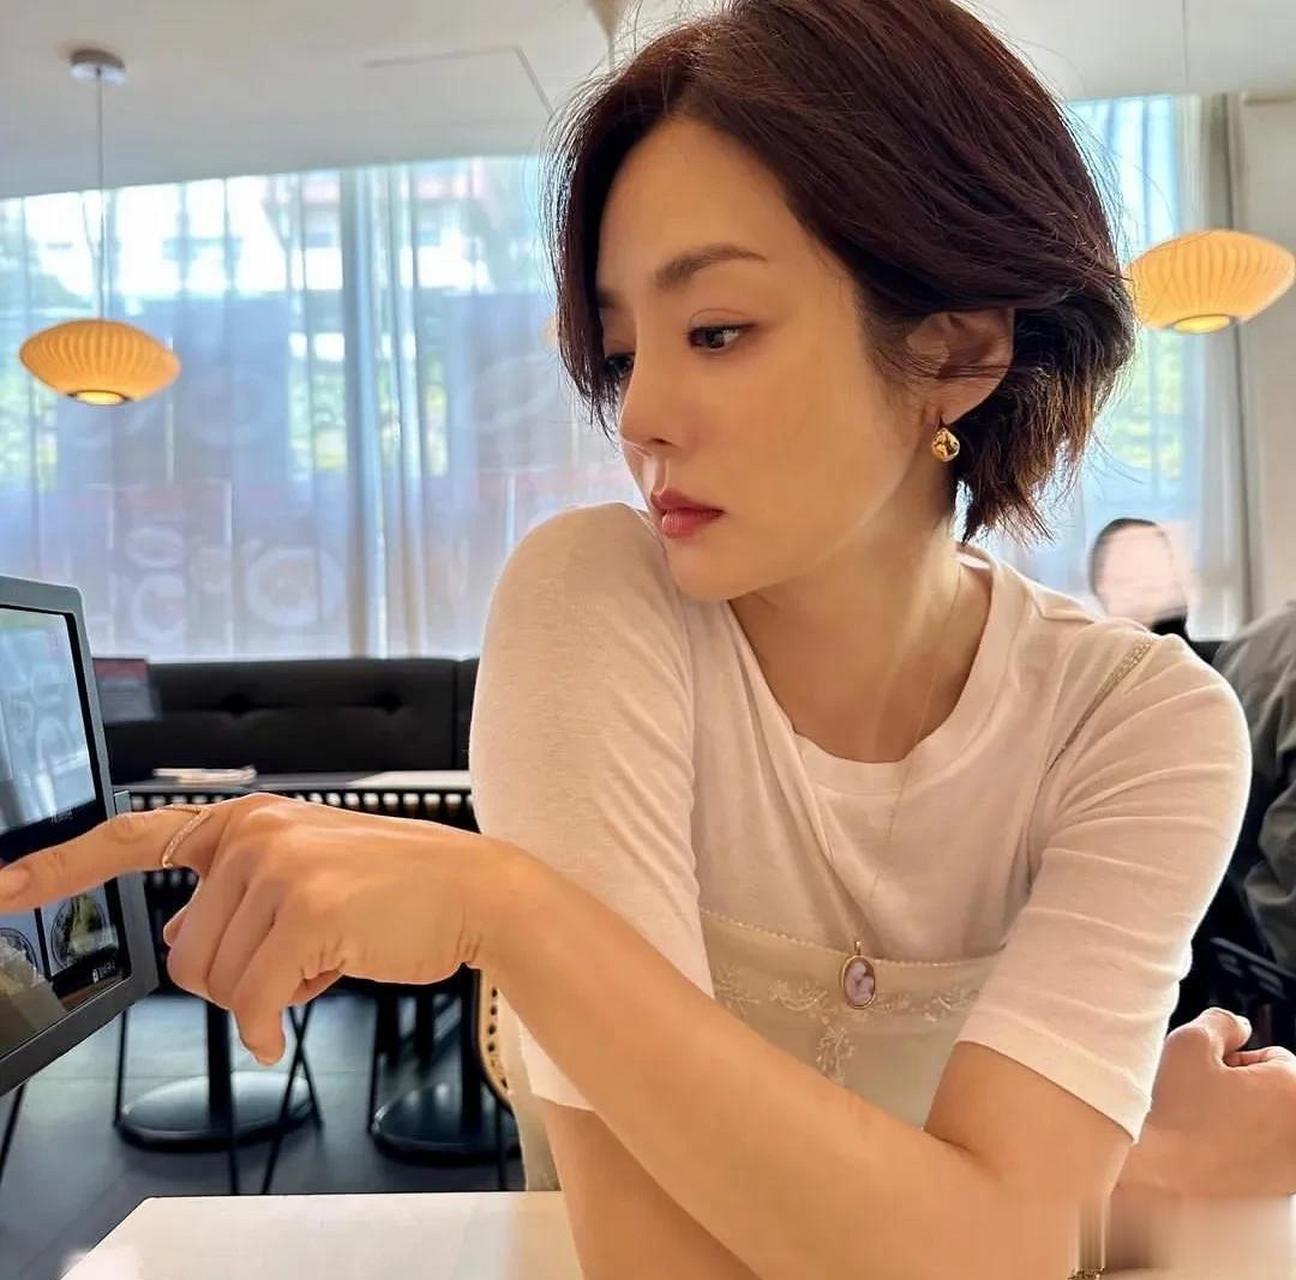 6月,演员蔡琳在自己的instagram上写道吃喝玩乐,还要工作,并上传了